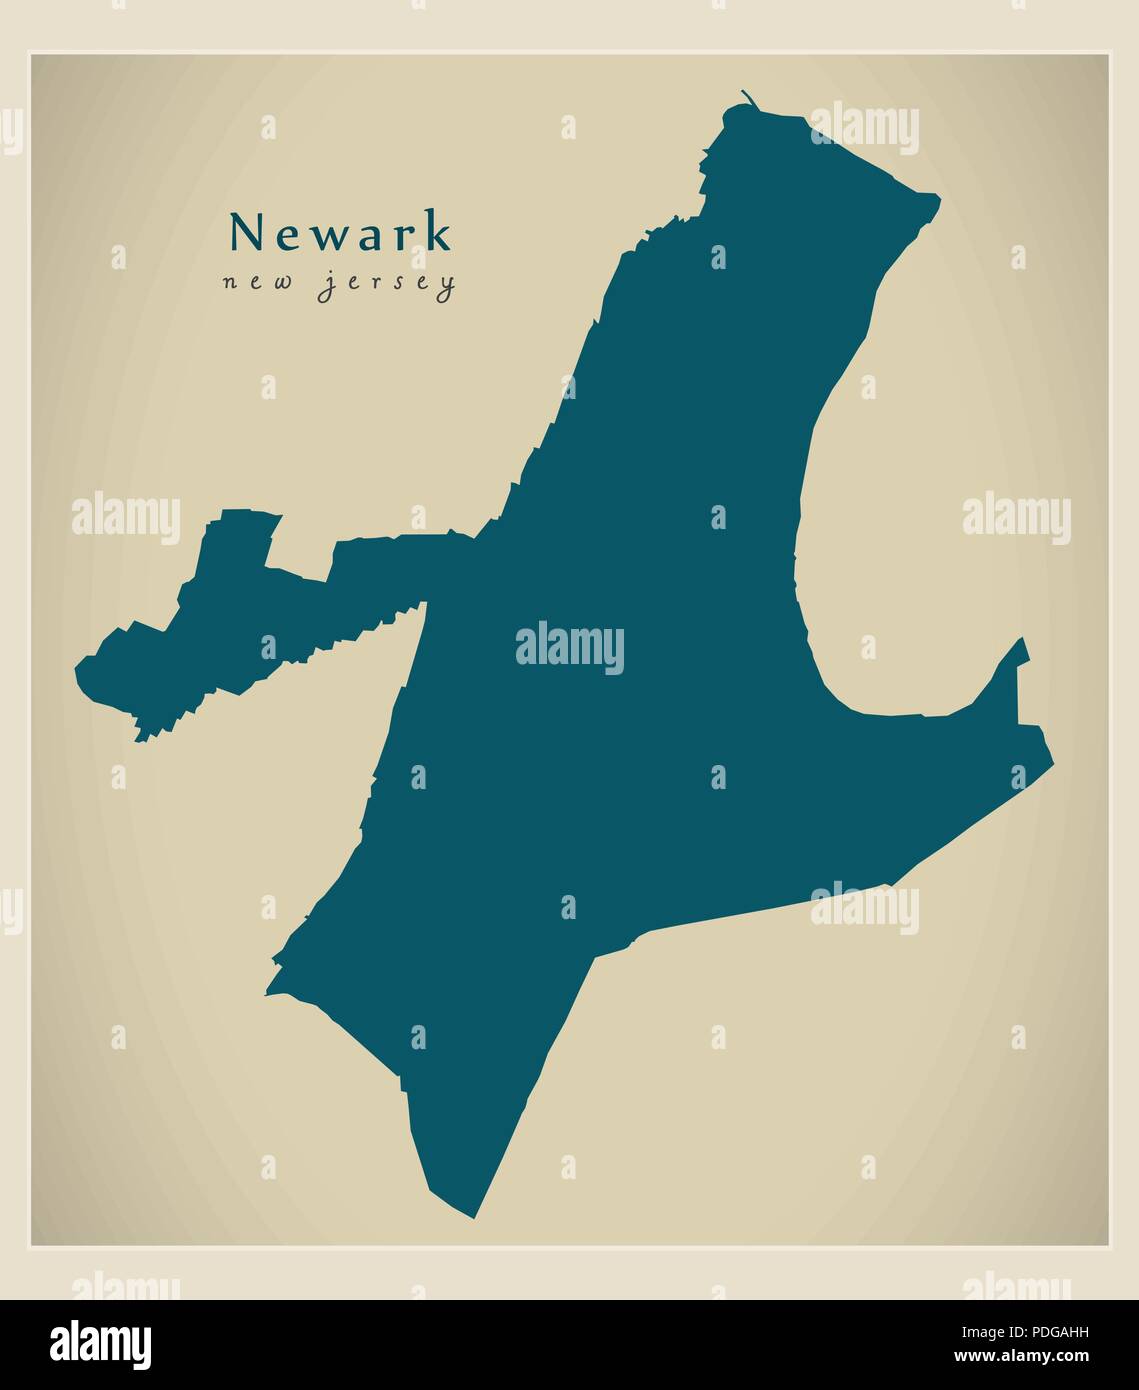 Plan de la ville moderne - Newark New Jersey Ville de l'USA Illustration de Vecteur